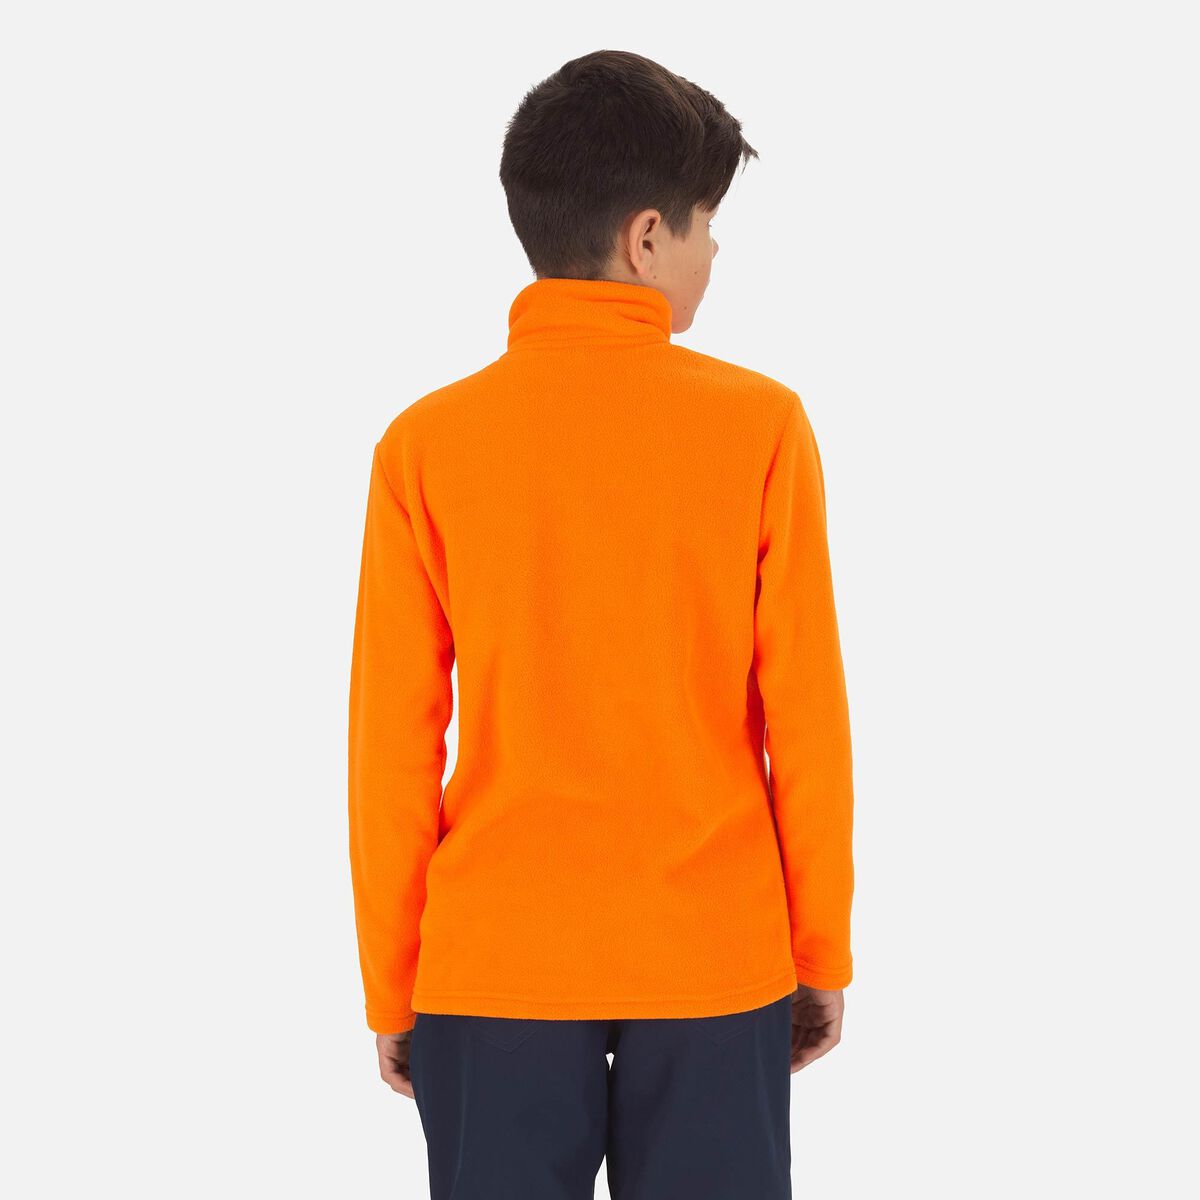 Rossignol Boys' Half-Zip Fleece Top Orange